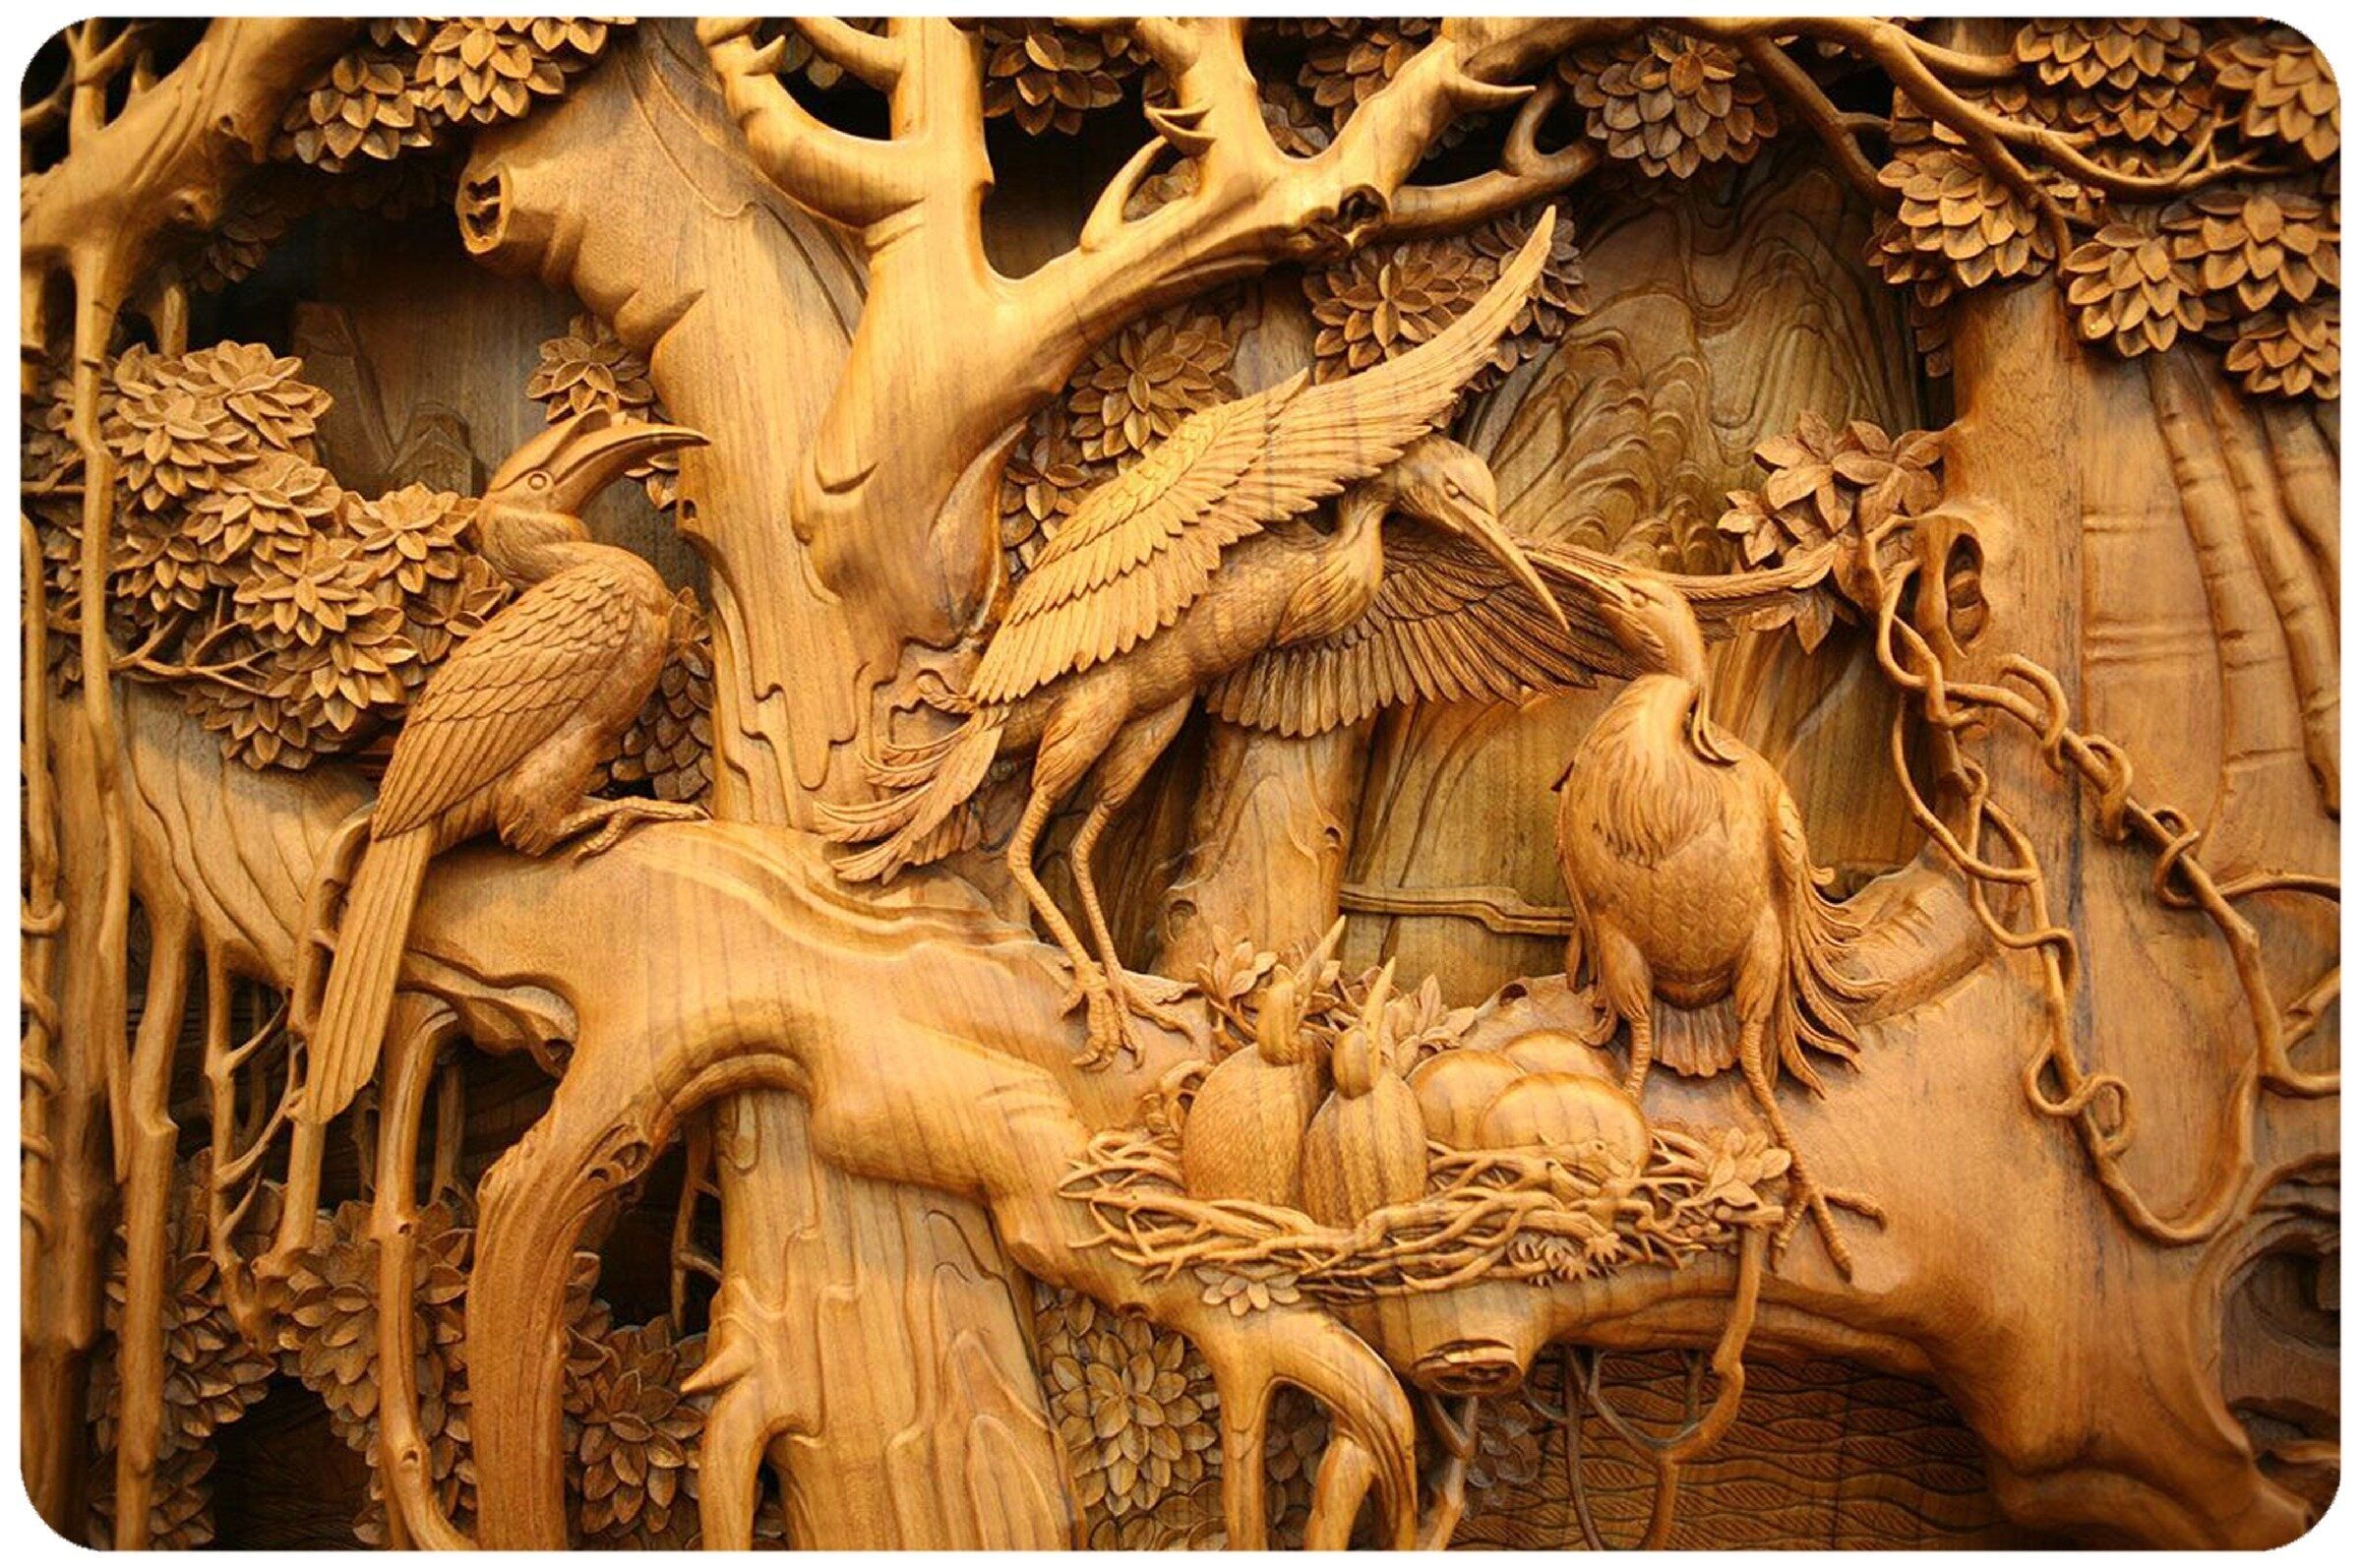 Работы по резьбе по дереву. Китайская резьба по дереву Донгянг. Горельефная резьба по дереву. Woodcarving резьба по дереву. Wood Carving резьба по дереву.